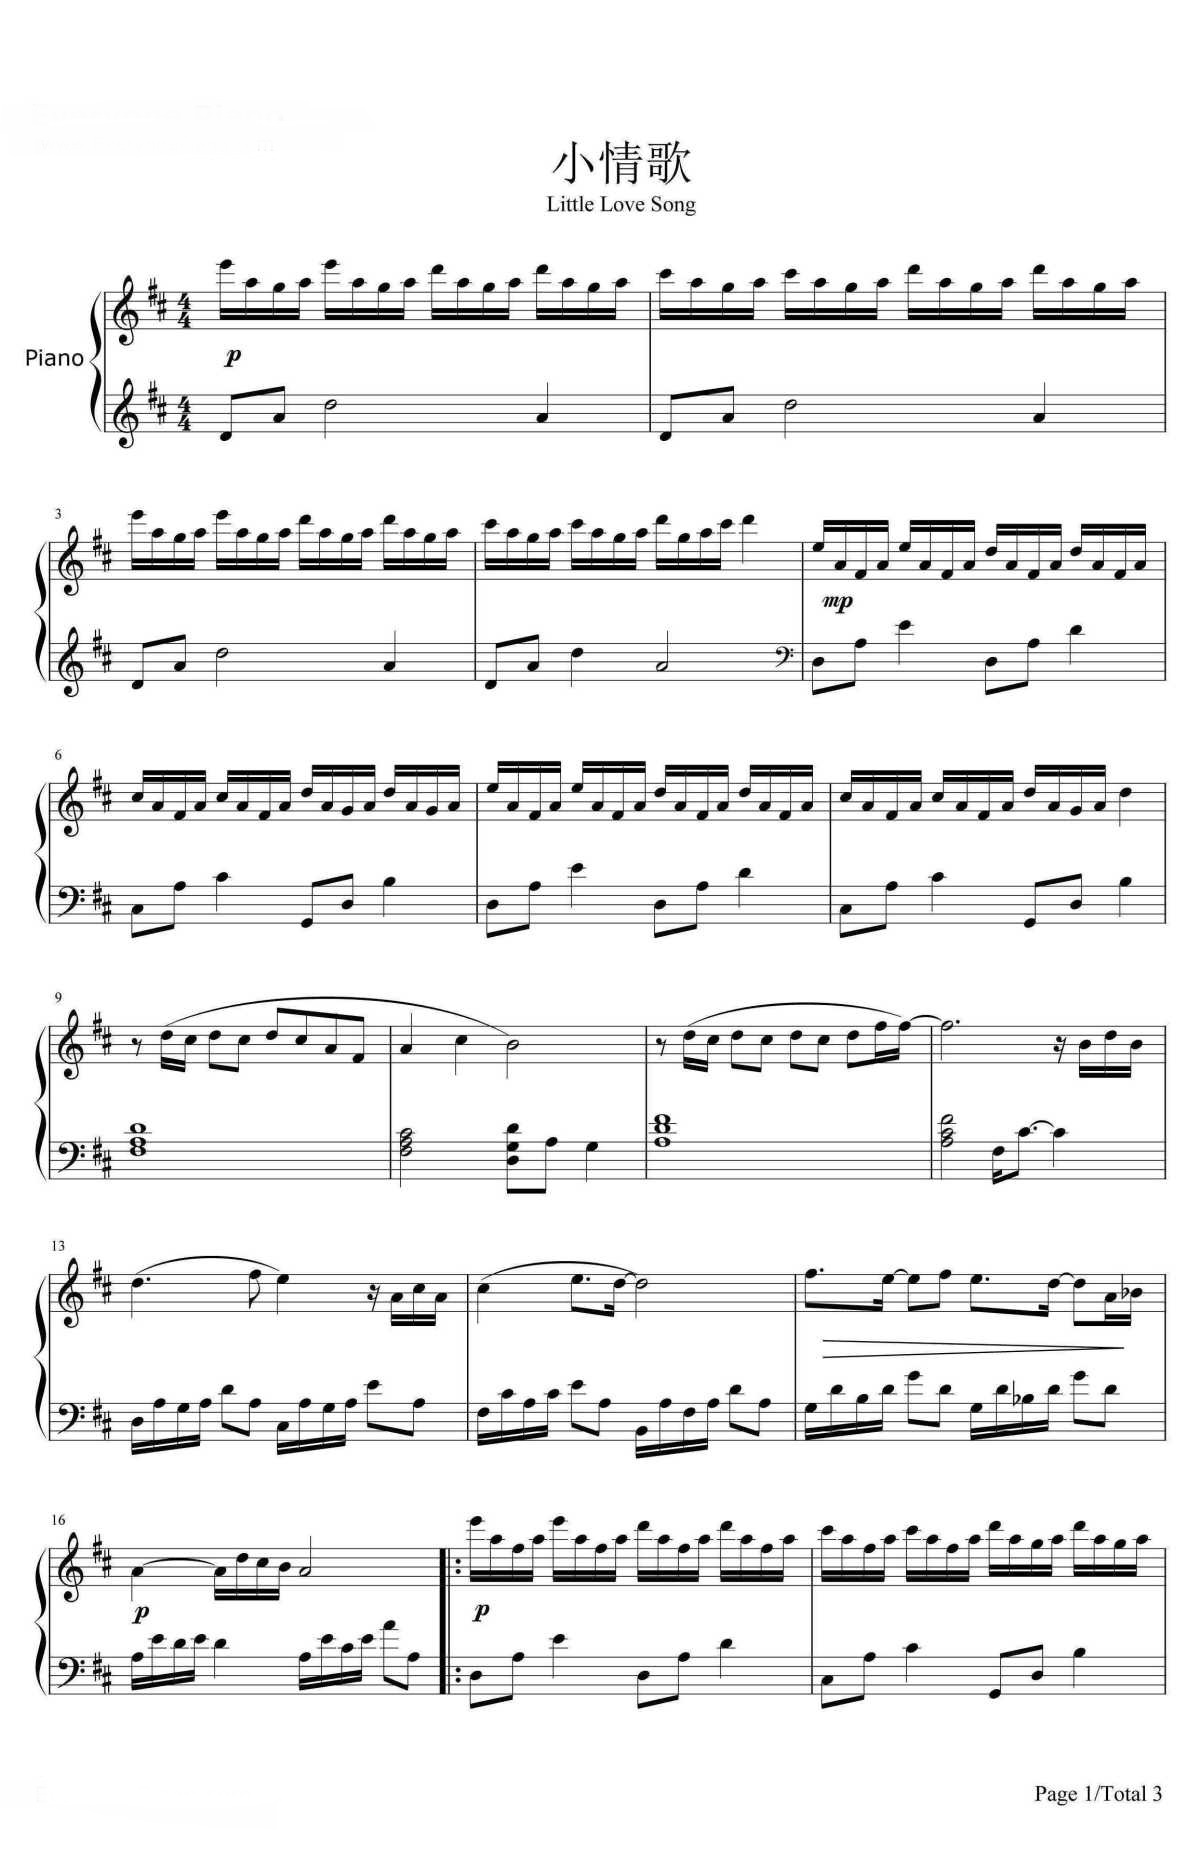 《小情歌》的钢琴谱钢琴曲谱 - 苏打绿